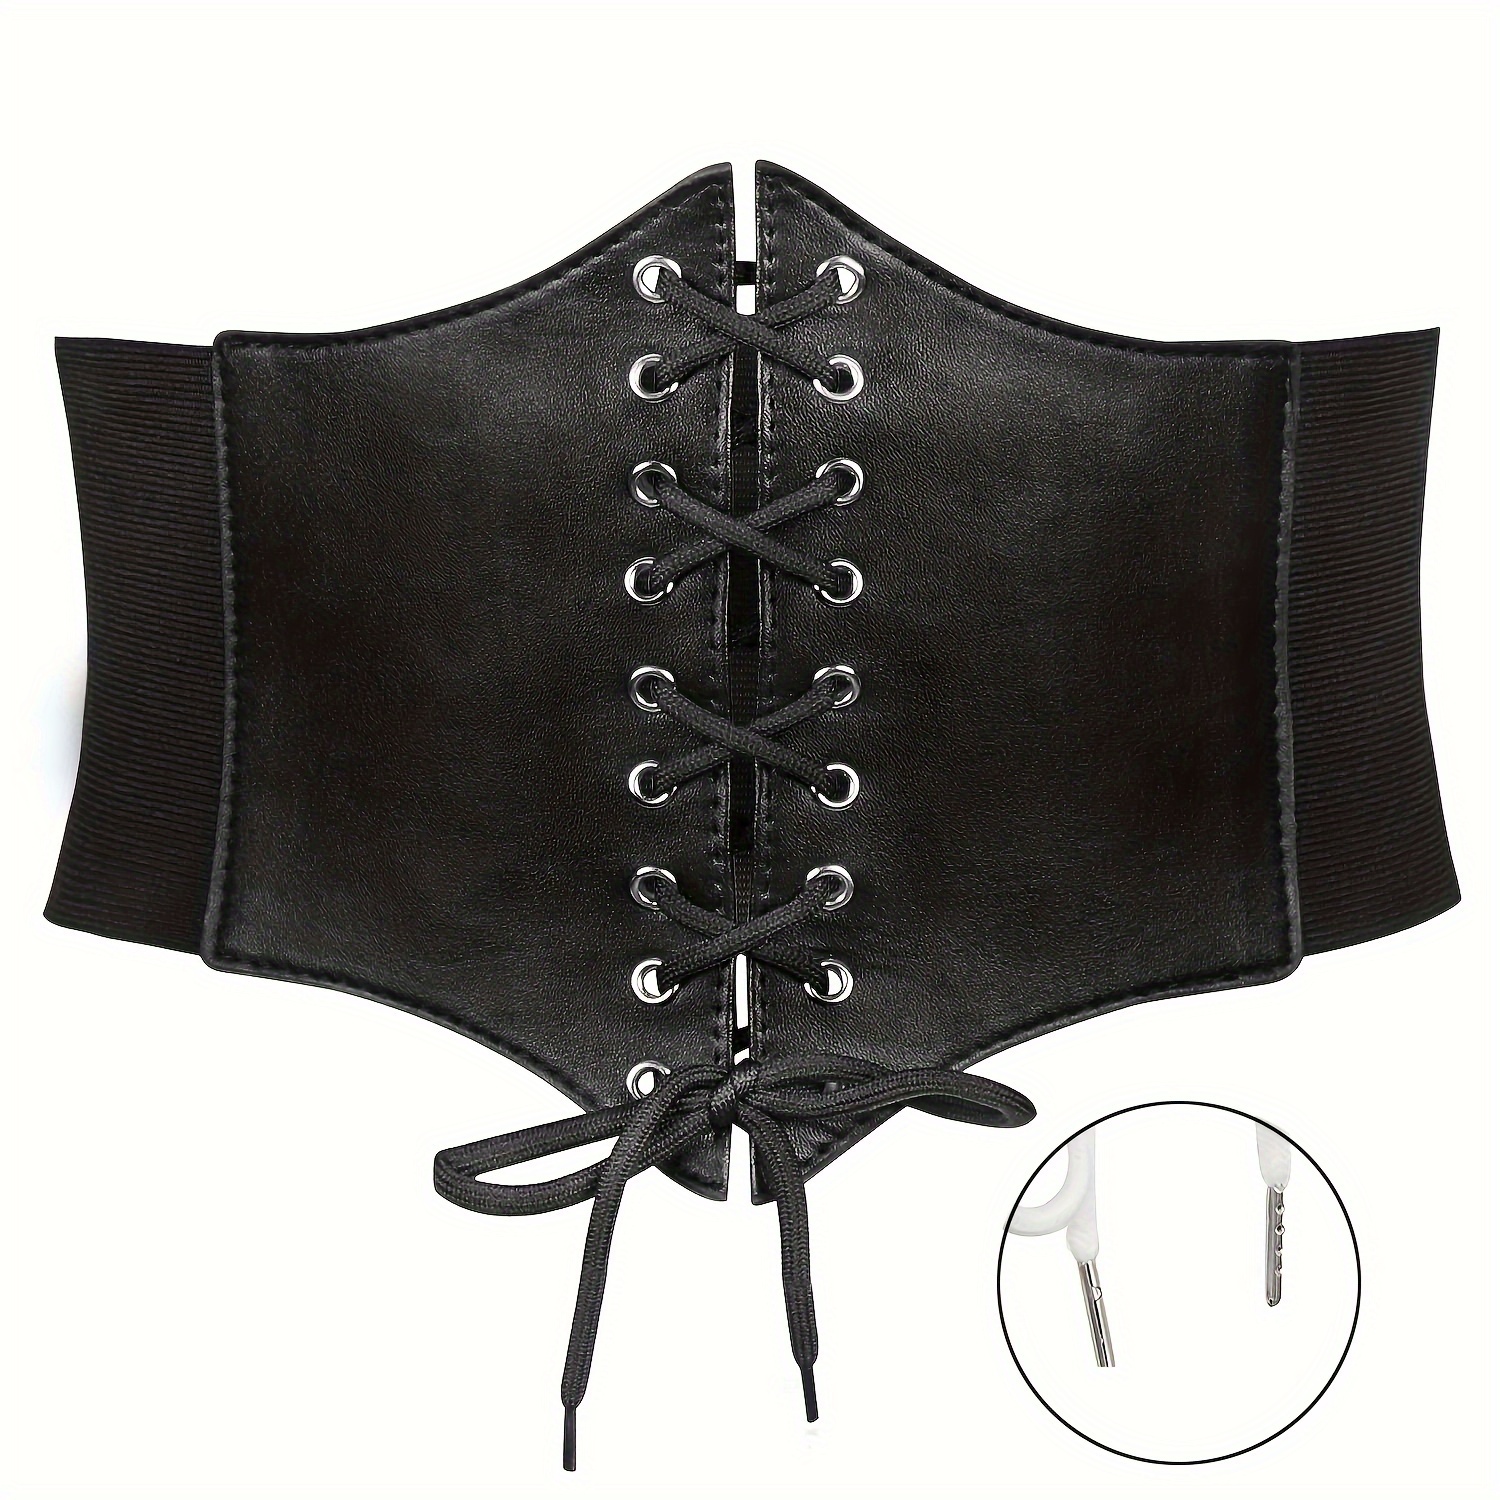 Multi Layer Chain Tassel Belt Gothic Vintage Corset Waistband Women ...